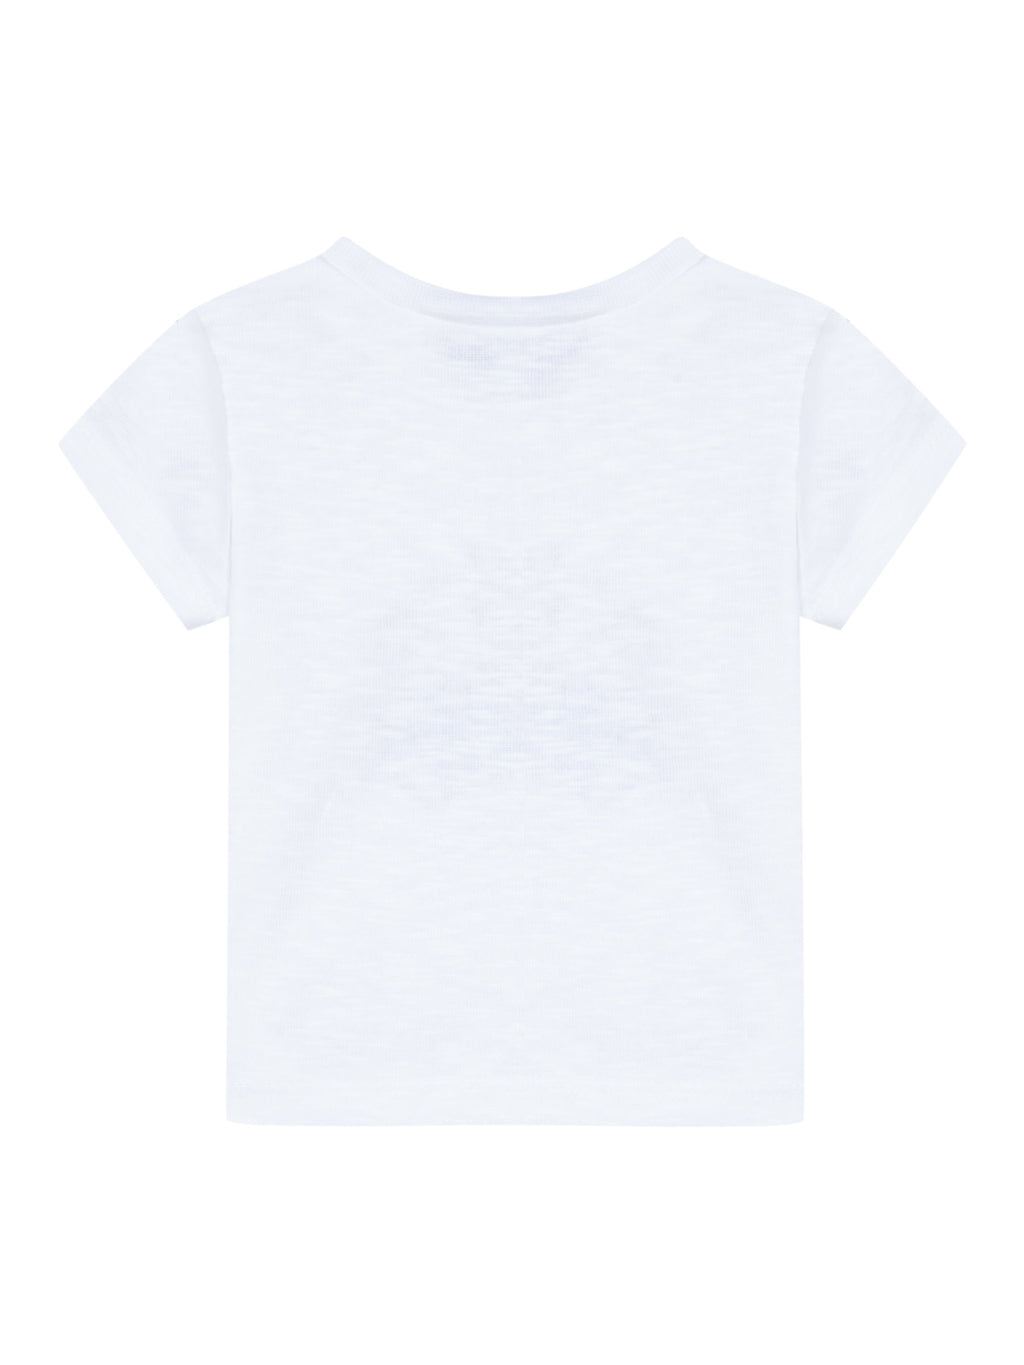 T -Shirt - Cotton Bianco furgone